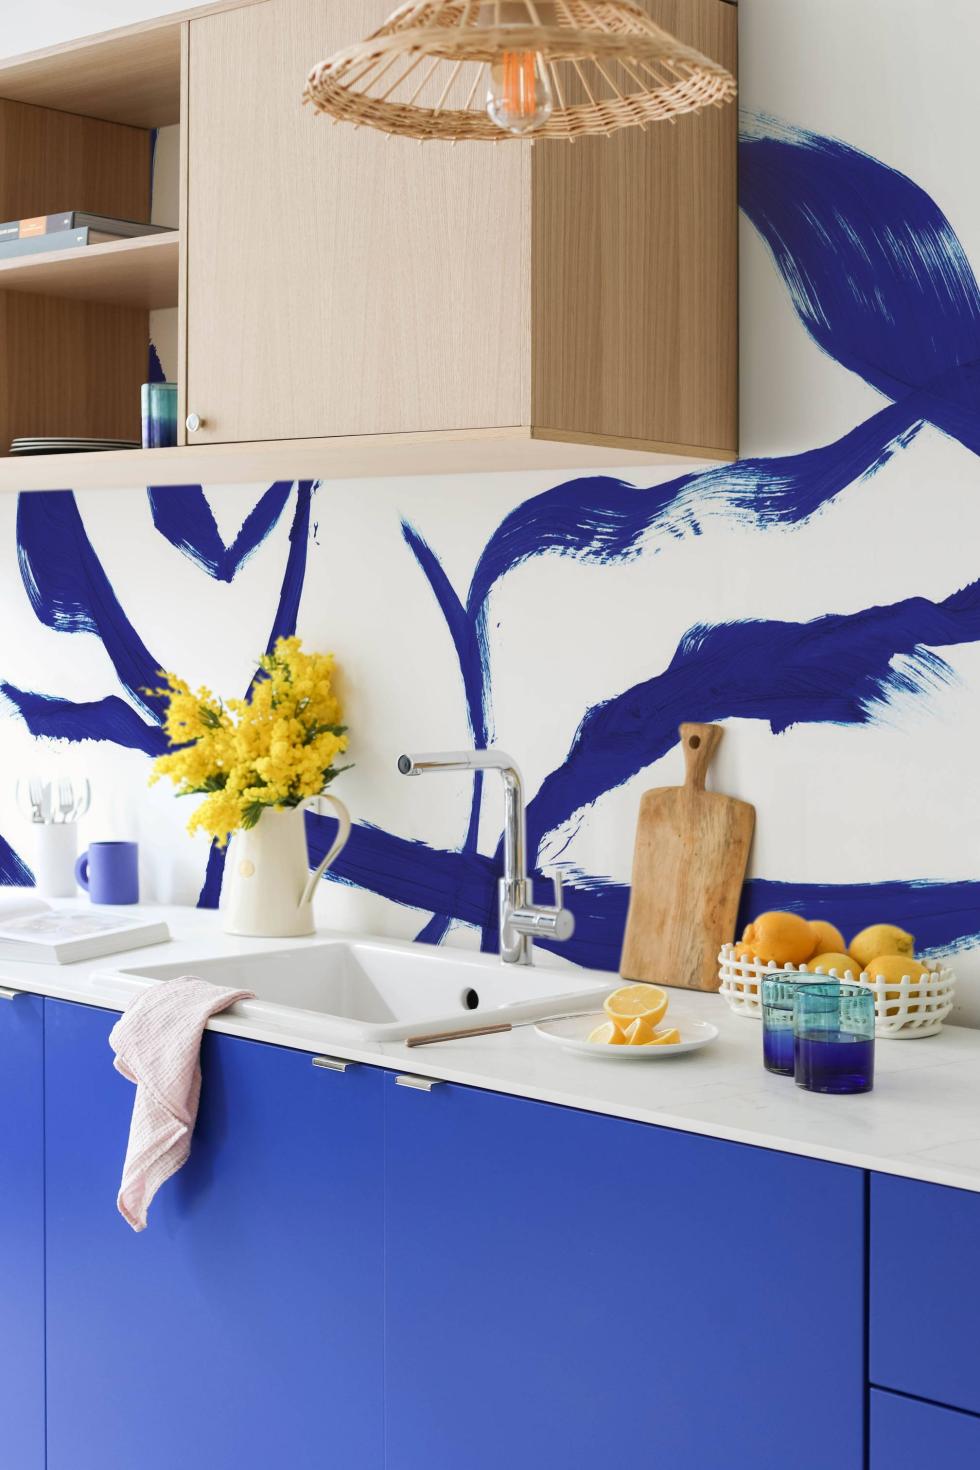 Küche in Electric Blau und Eiche Natur mit blauer Tapete.